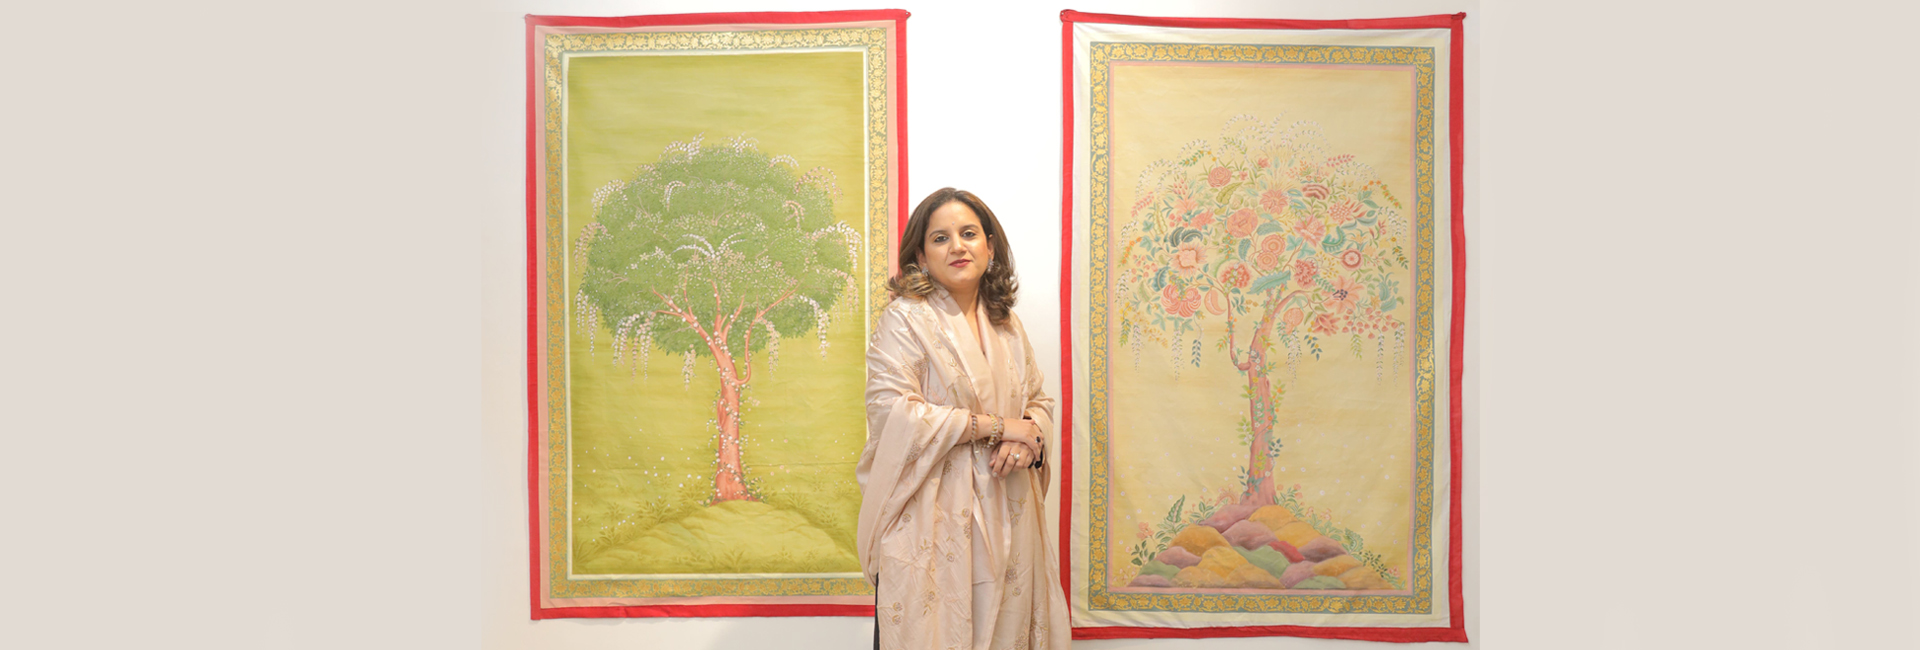 တော်ဝင်ဒိုင်ယာရီများ- Kishangarh မှ မင်းသမီး Vaishnavi သည် ပျောက်ဆုံးသွားသော အနုပညာကို ပြန်လည်အသက်သွင်းရန် လုပ်ဆောင်နေပါသည်။